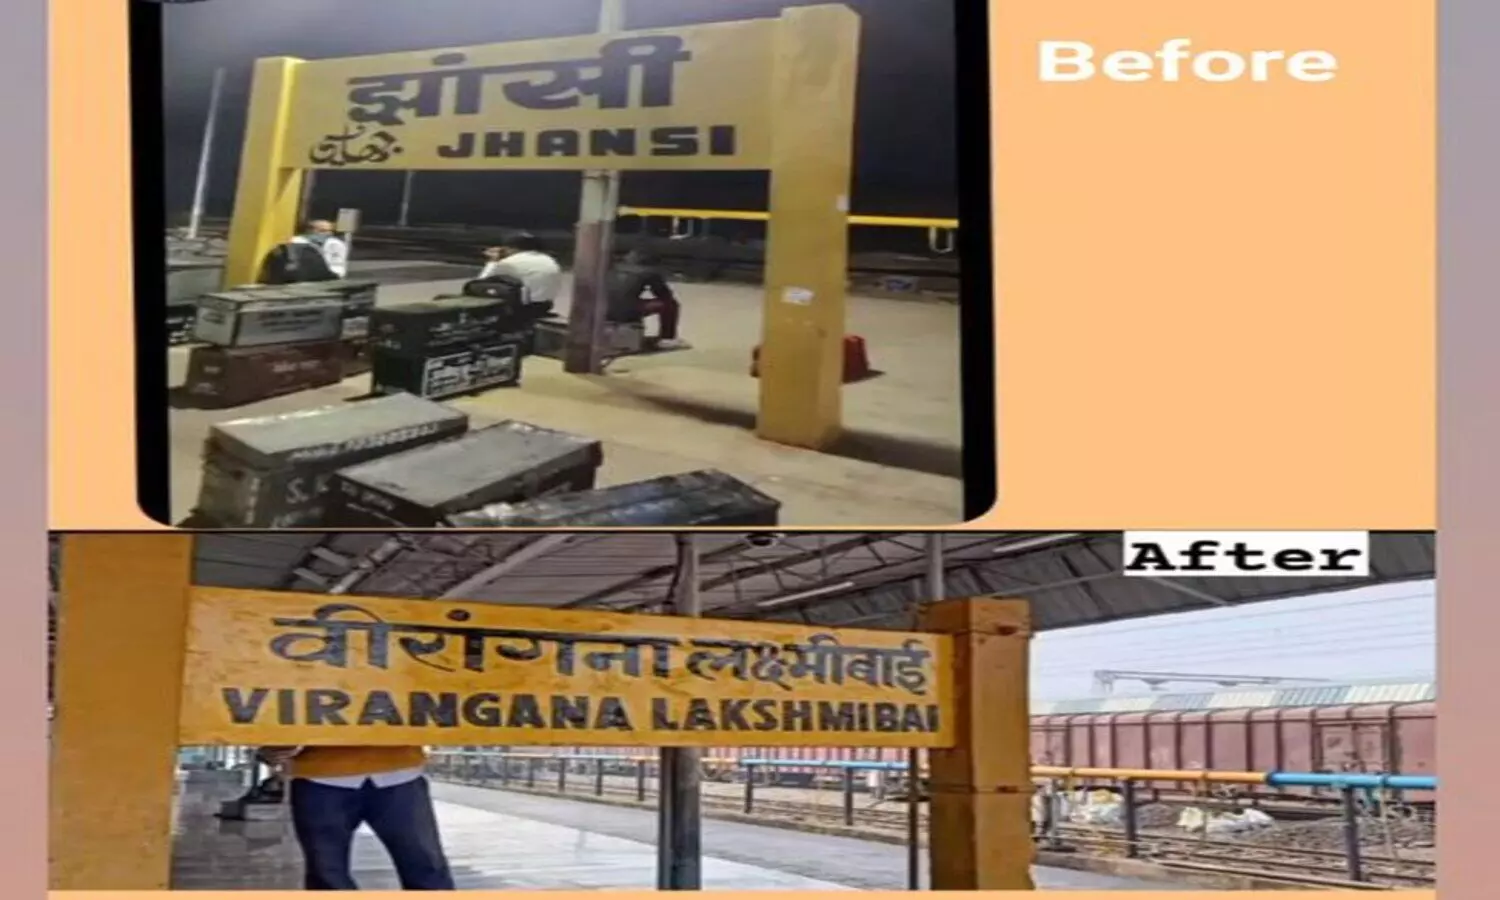 Jhansi Railway station name change